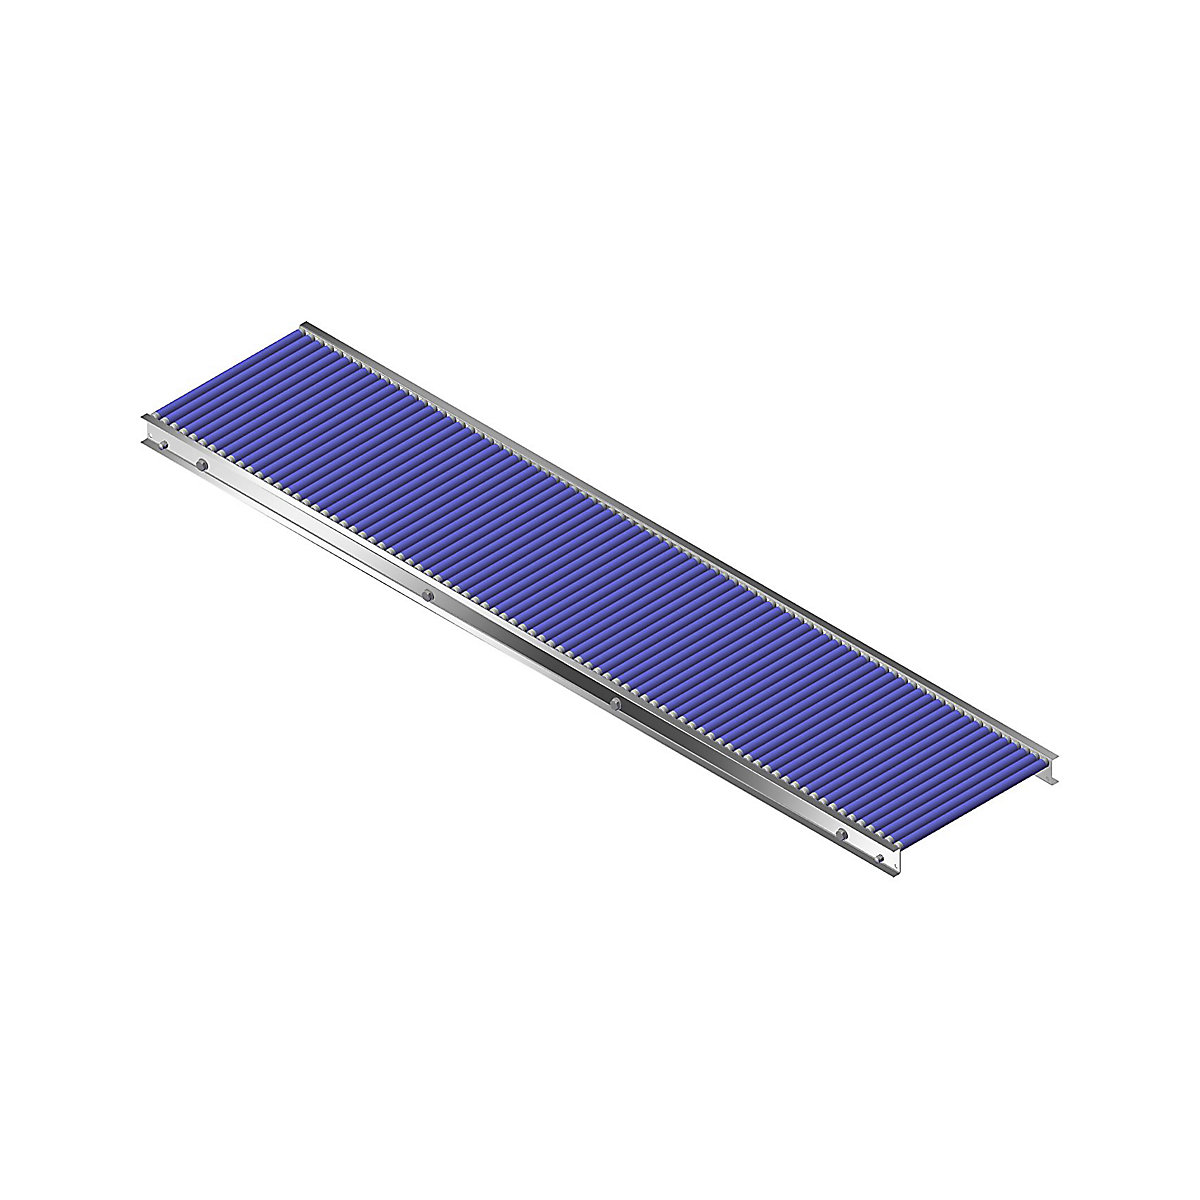 Gura – Malá valčeková dráha, hliníkový rám s plastovými valčekmi, šírka dráhy 400 mm, vzdialenosť osí 25 mm, dĺžka 2,0 m